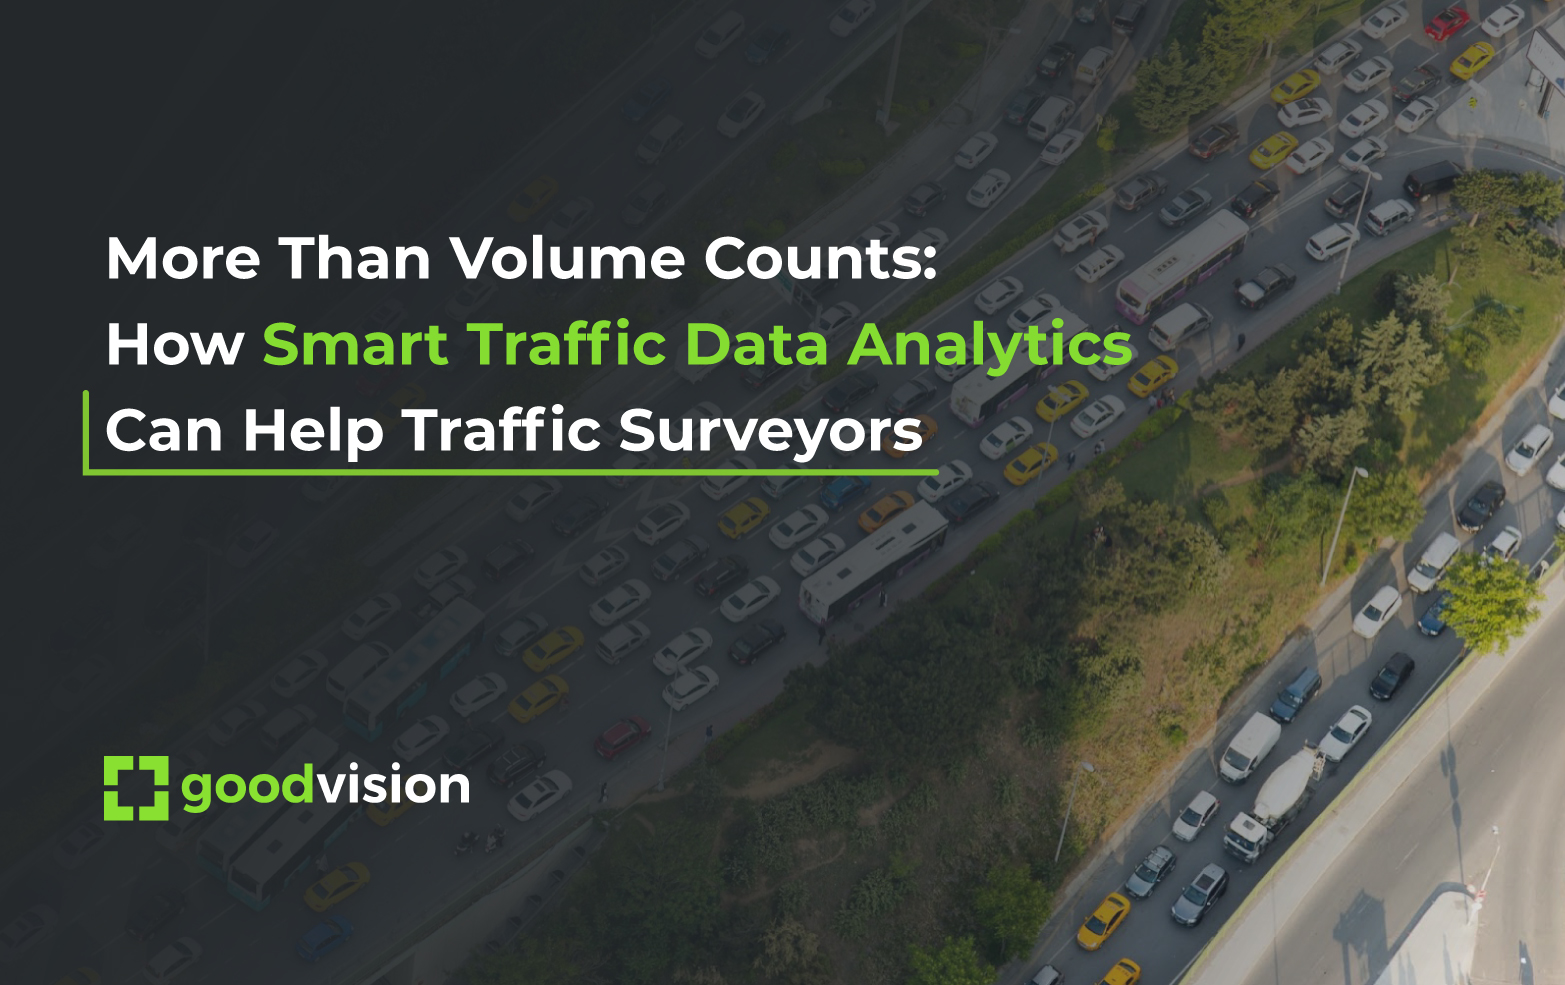 traffic data analytics